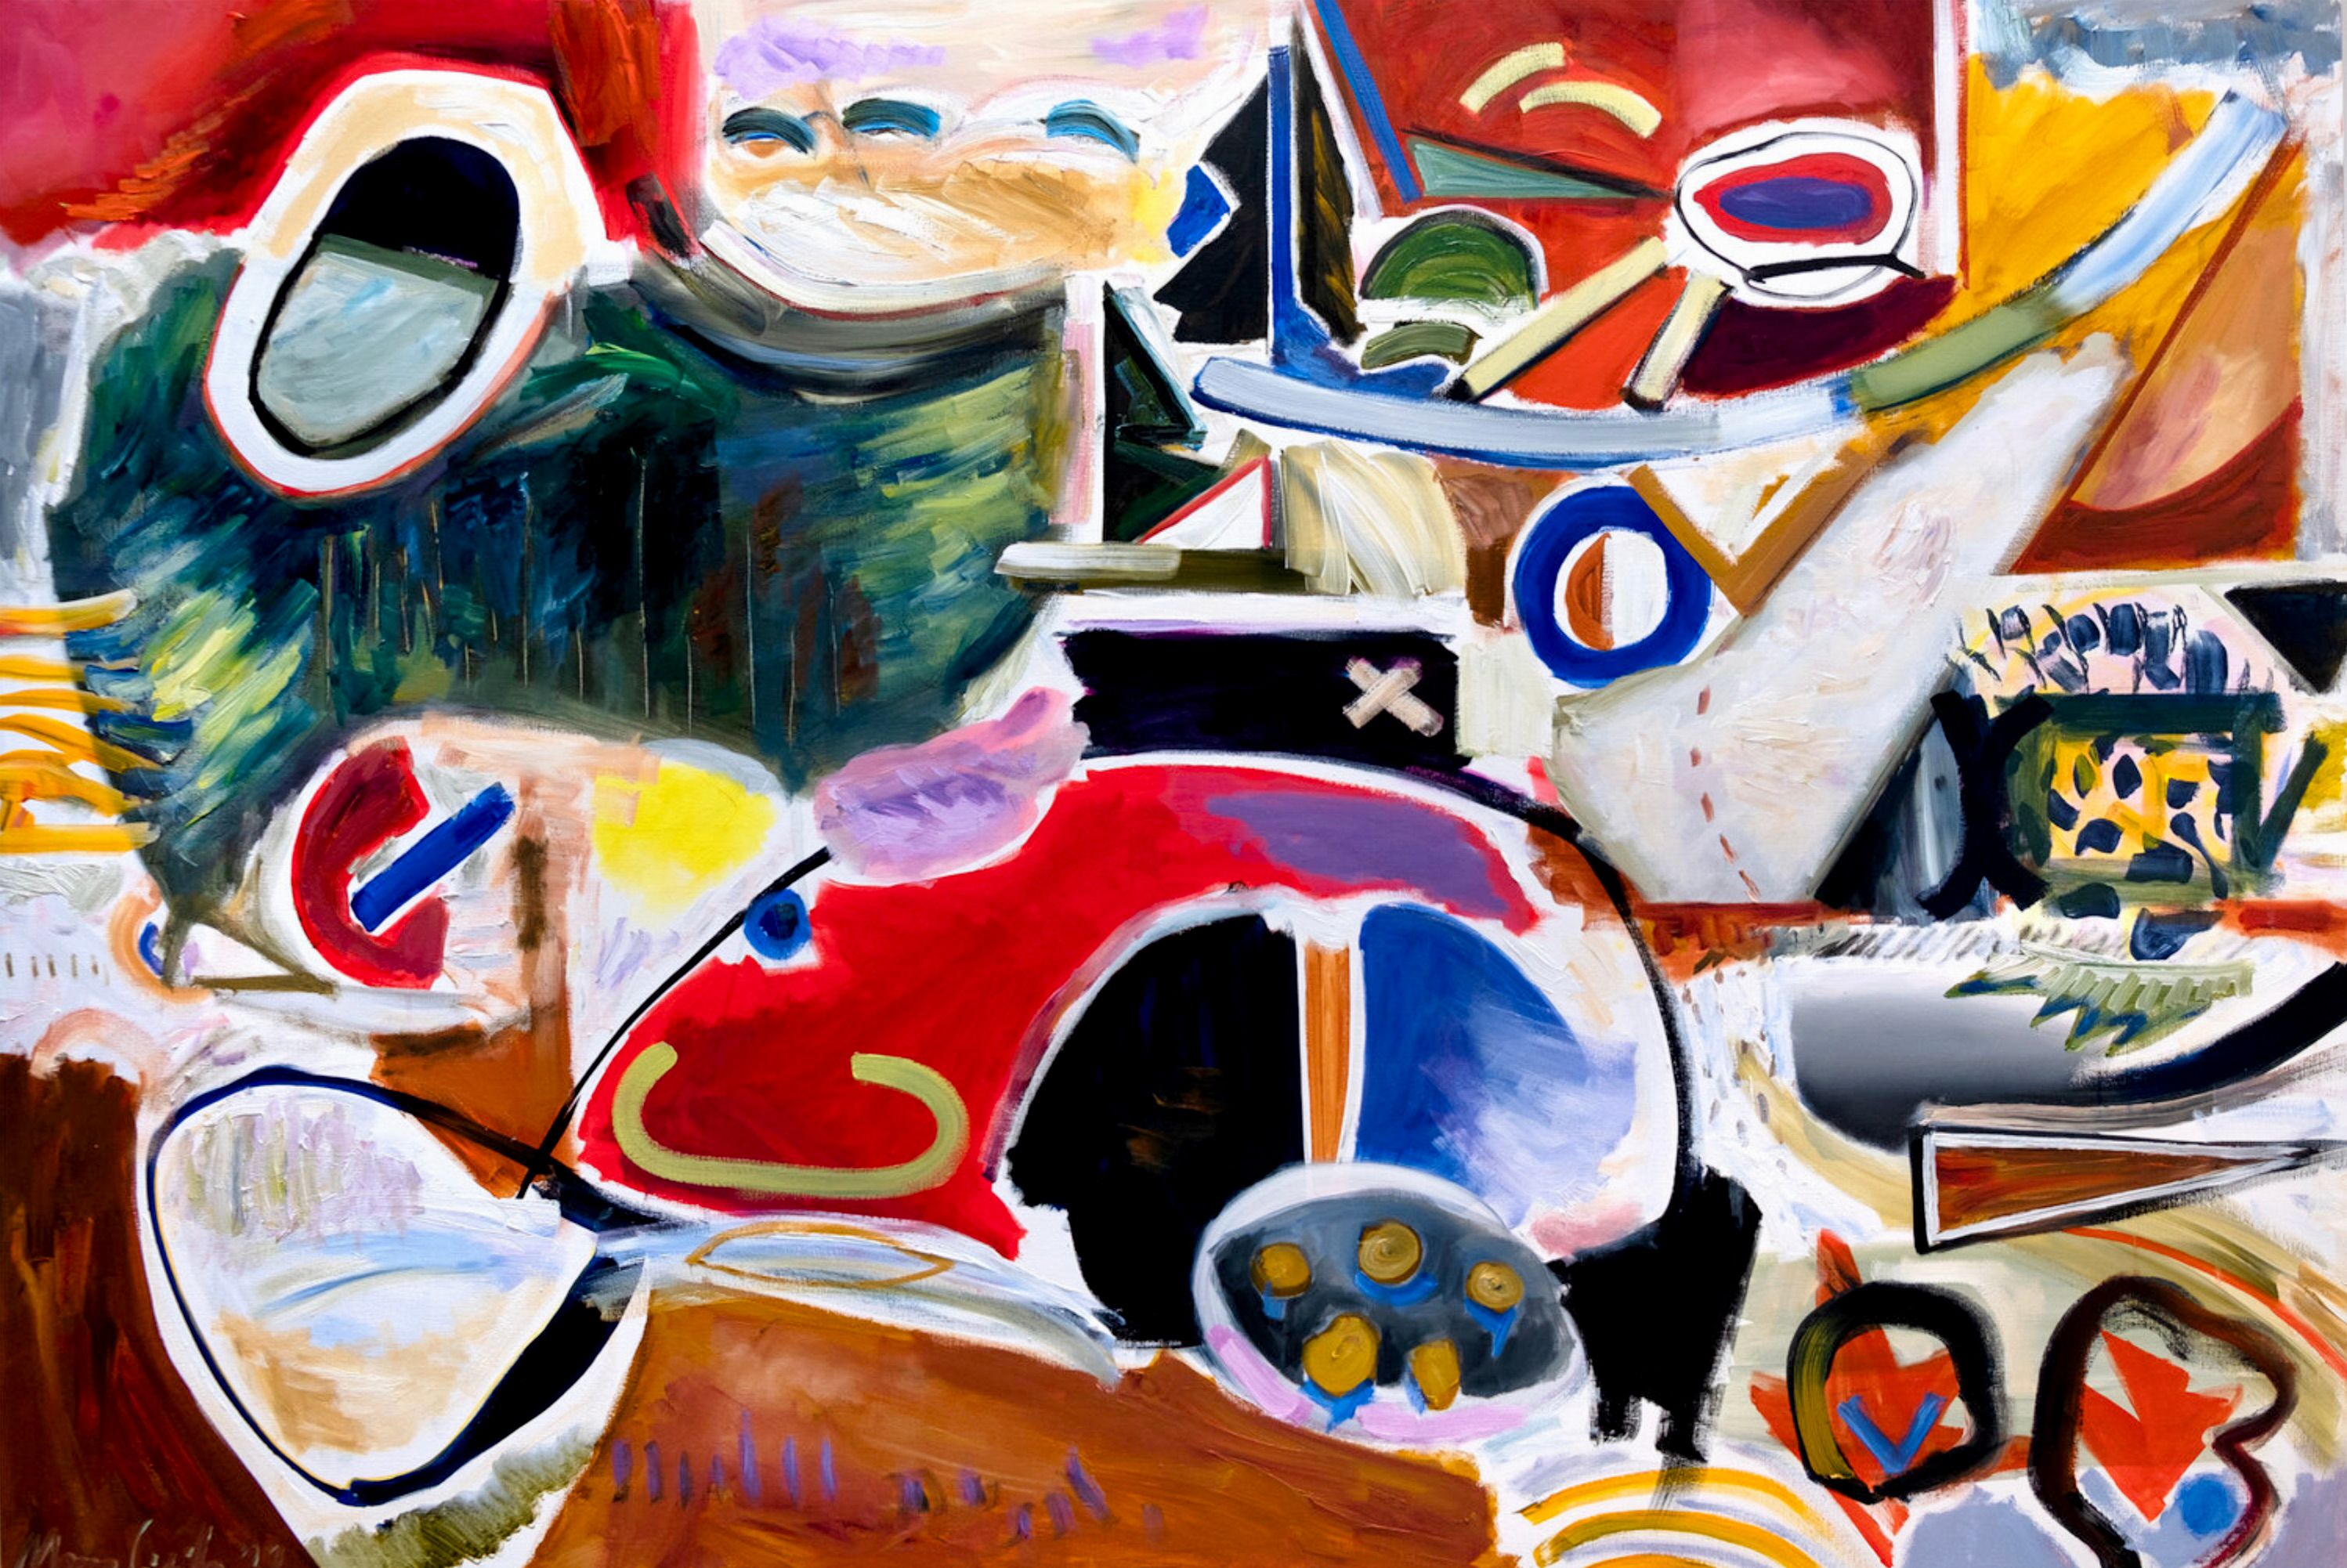 MECESLA Maciej Cieśla, "Abstracto inspirado en la naturaleza", Pintura abstracta colorida sobre lienzo